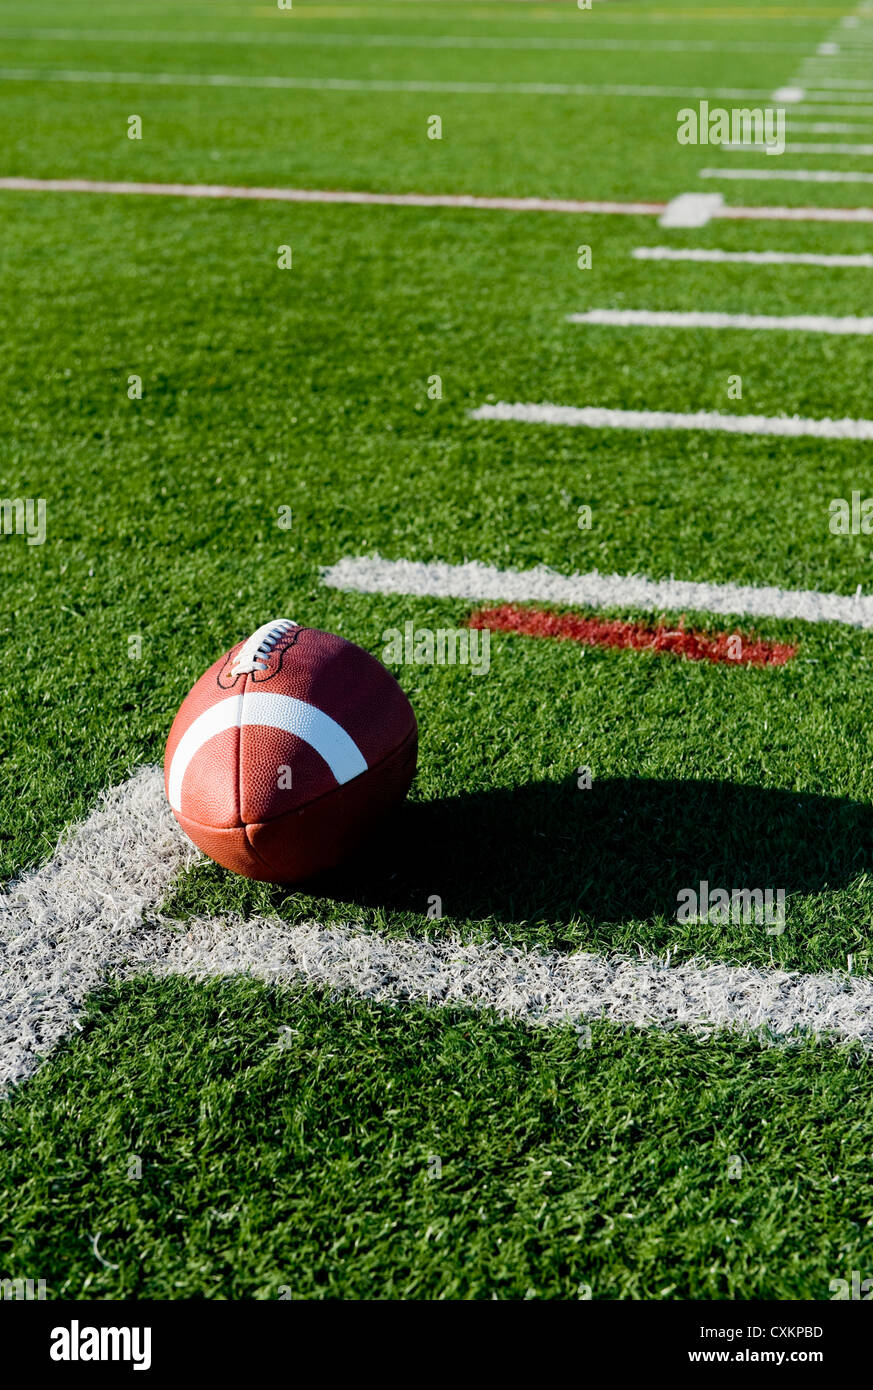 Un football américain en cuir brun vert sur un terrain de football Banque D'Images